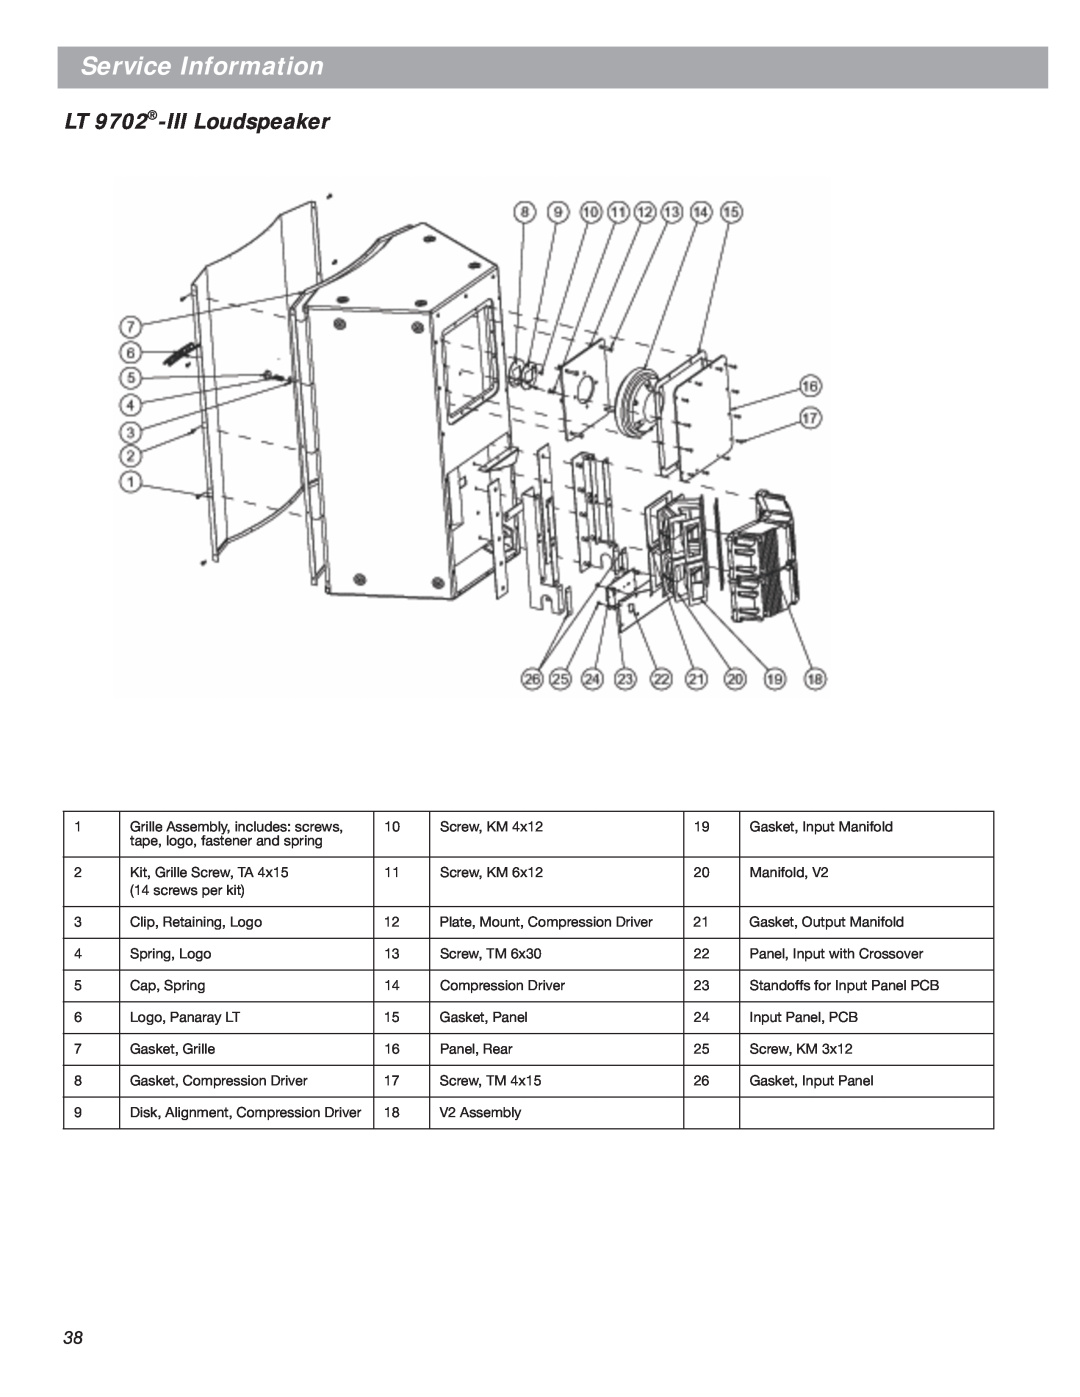 Bose LT Series III, Bose Panaray Loudspeakers manual LT 9702-IIILoudspeaker, Service Information 